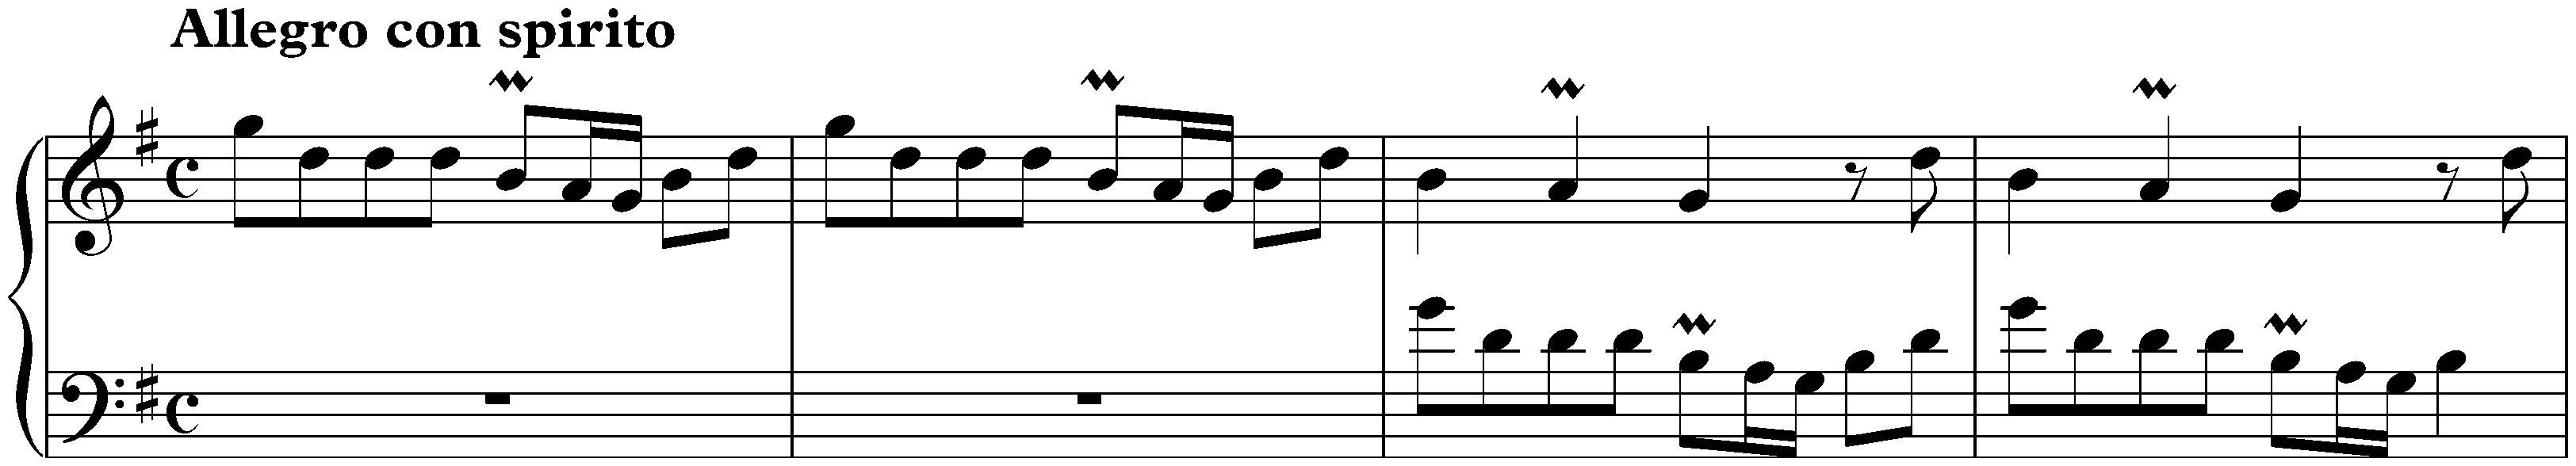 Sonata in G major, K. 169